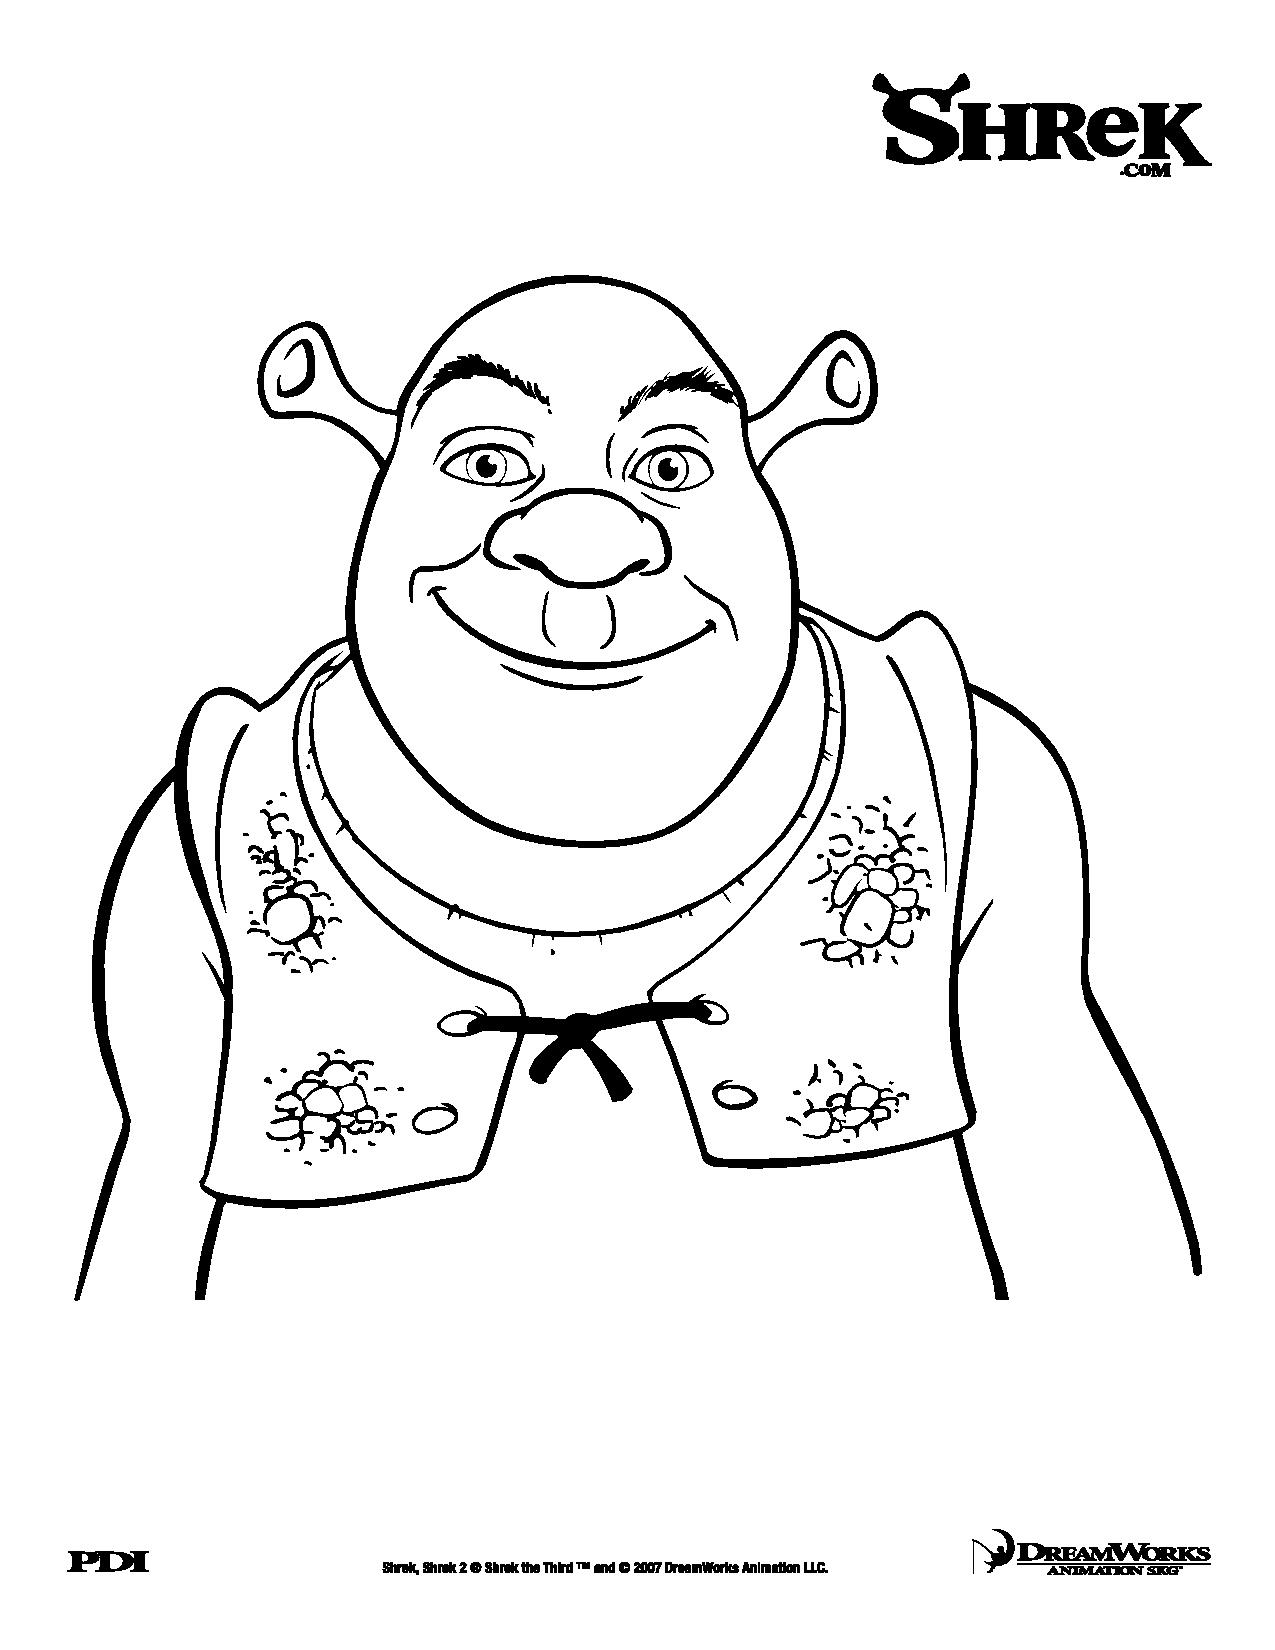 Um ogre sorridente! E sim, é Shrek, o primeiro e único